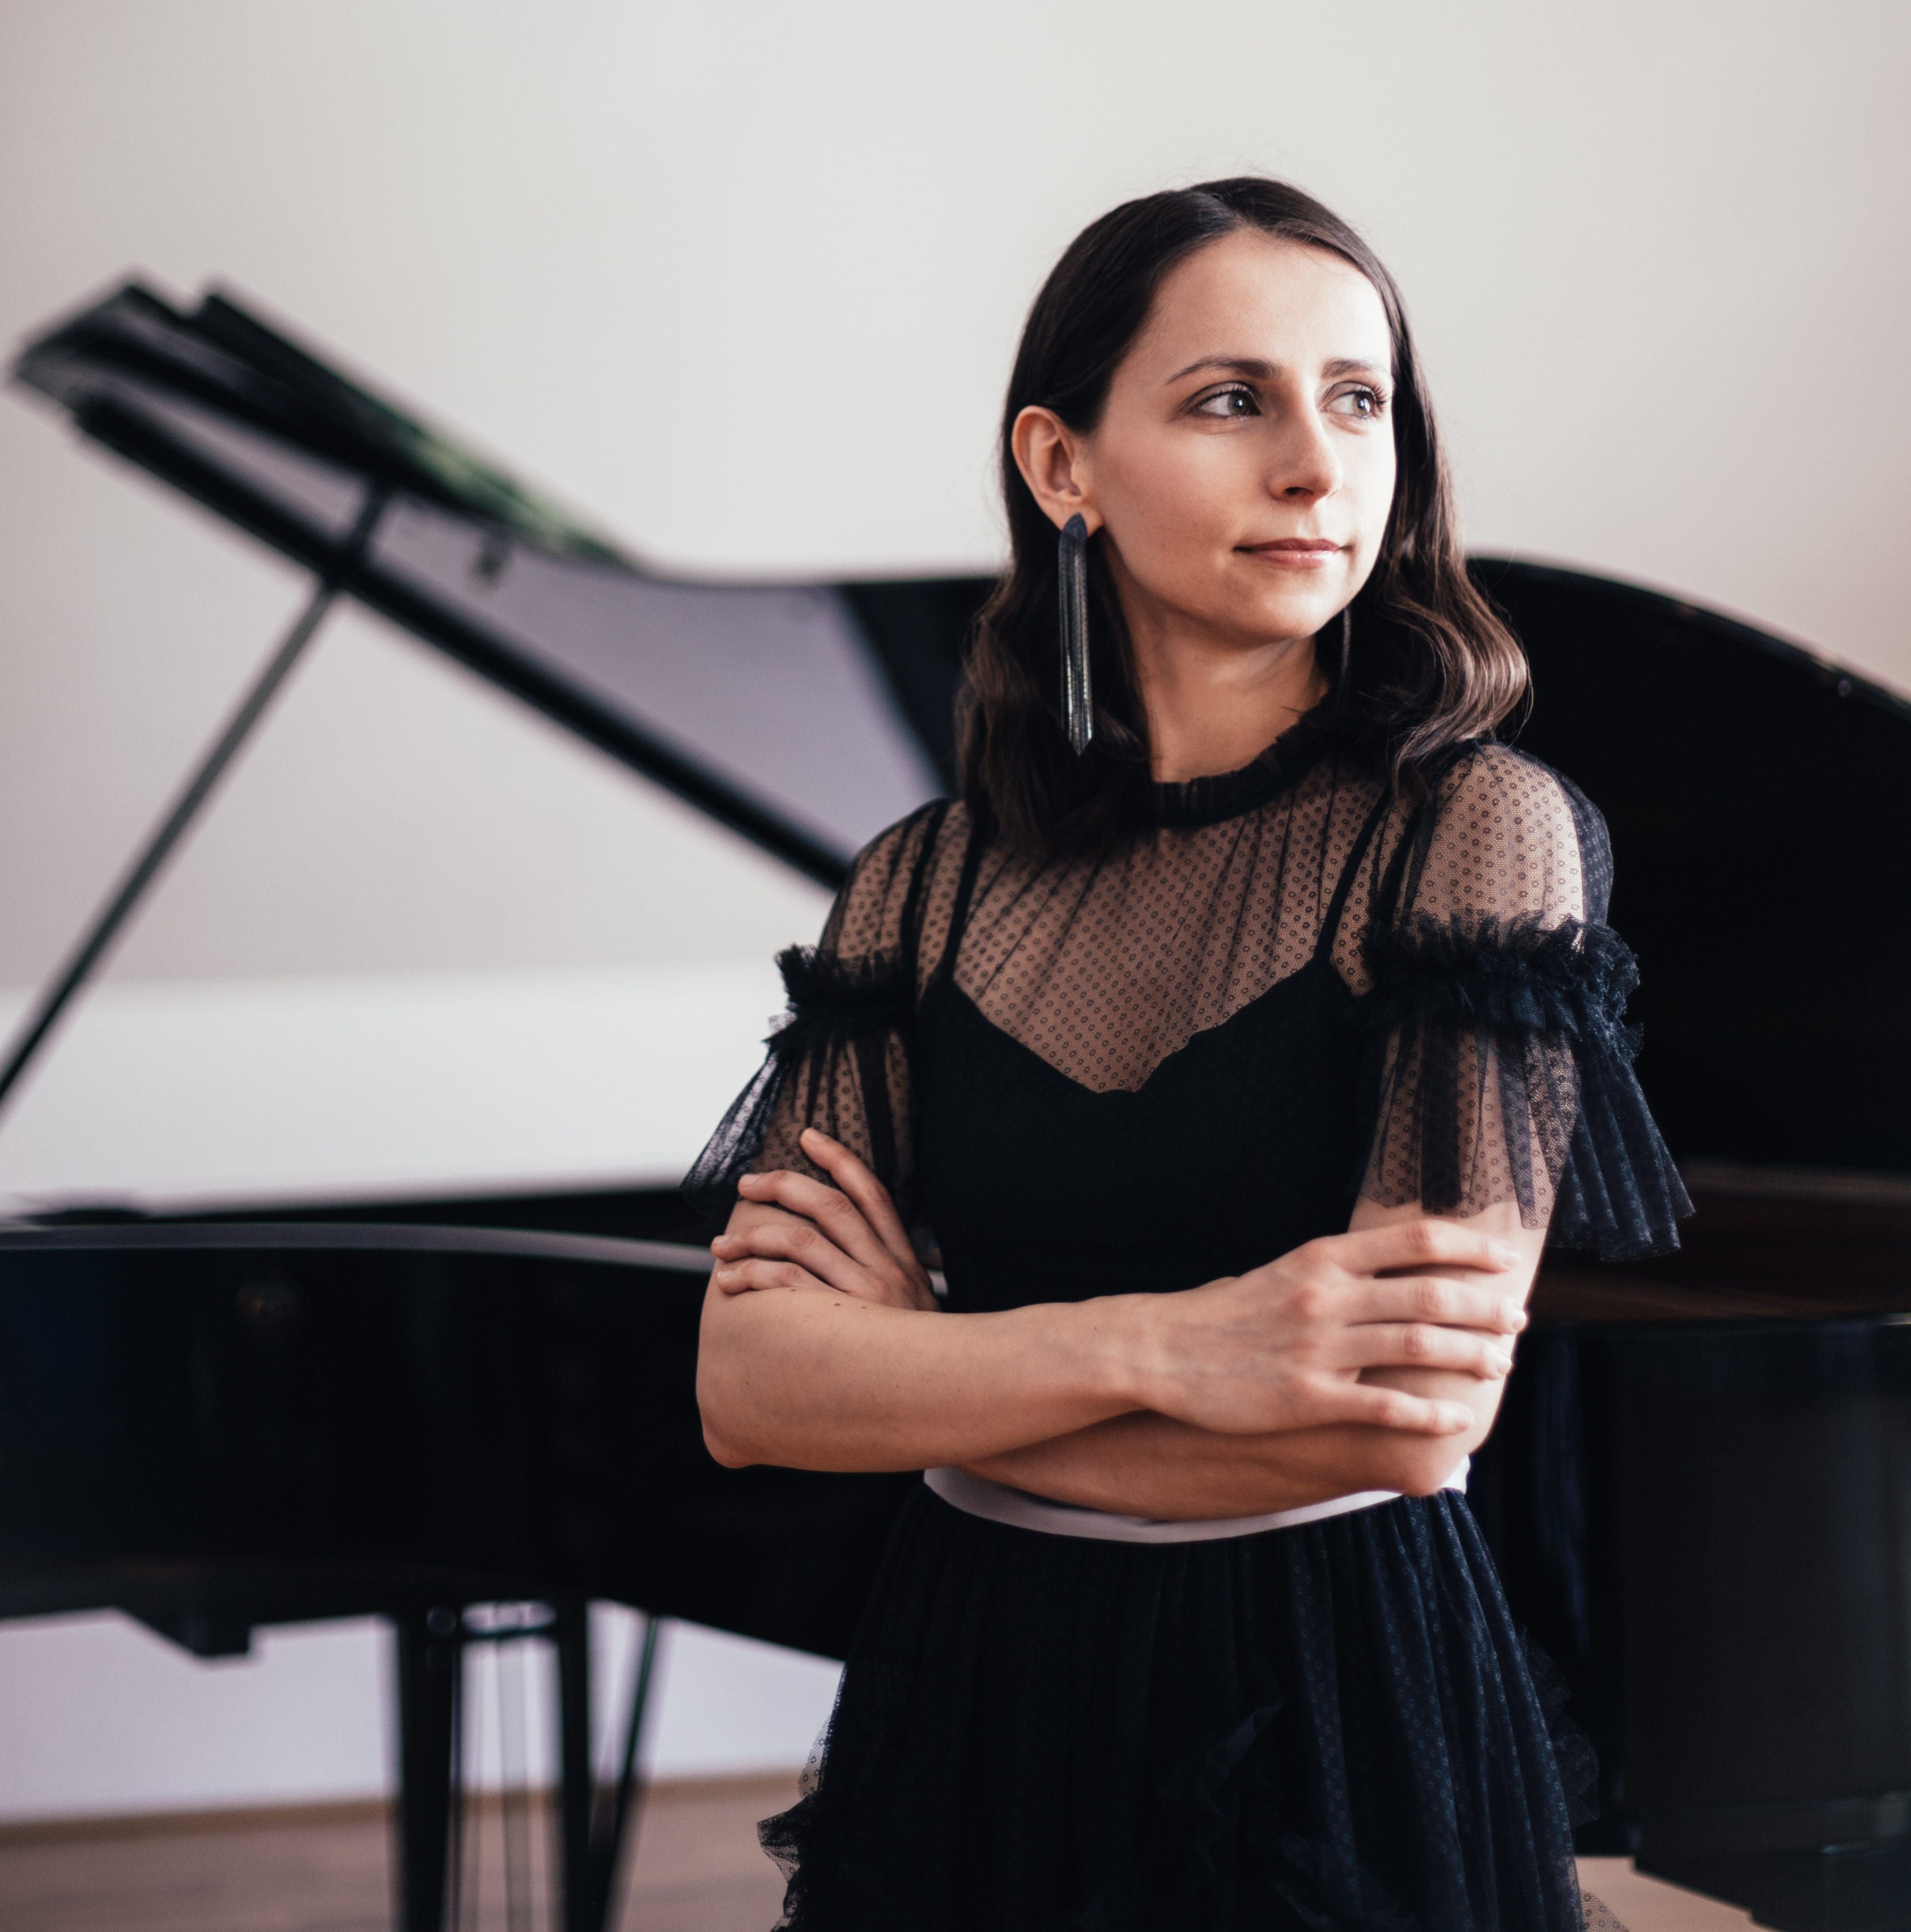 Anna Khomichko kommt aus Köln und spielt Werke von den Bach-Söhnen, die das Musikgenie Mozart sehr beeinflusst haben. Foto - Sihoo Kim